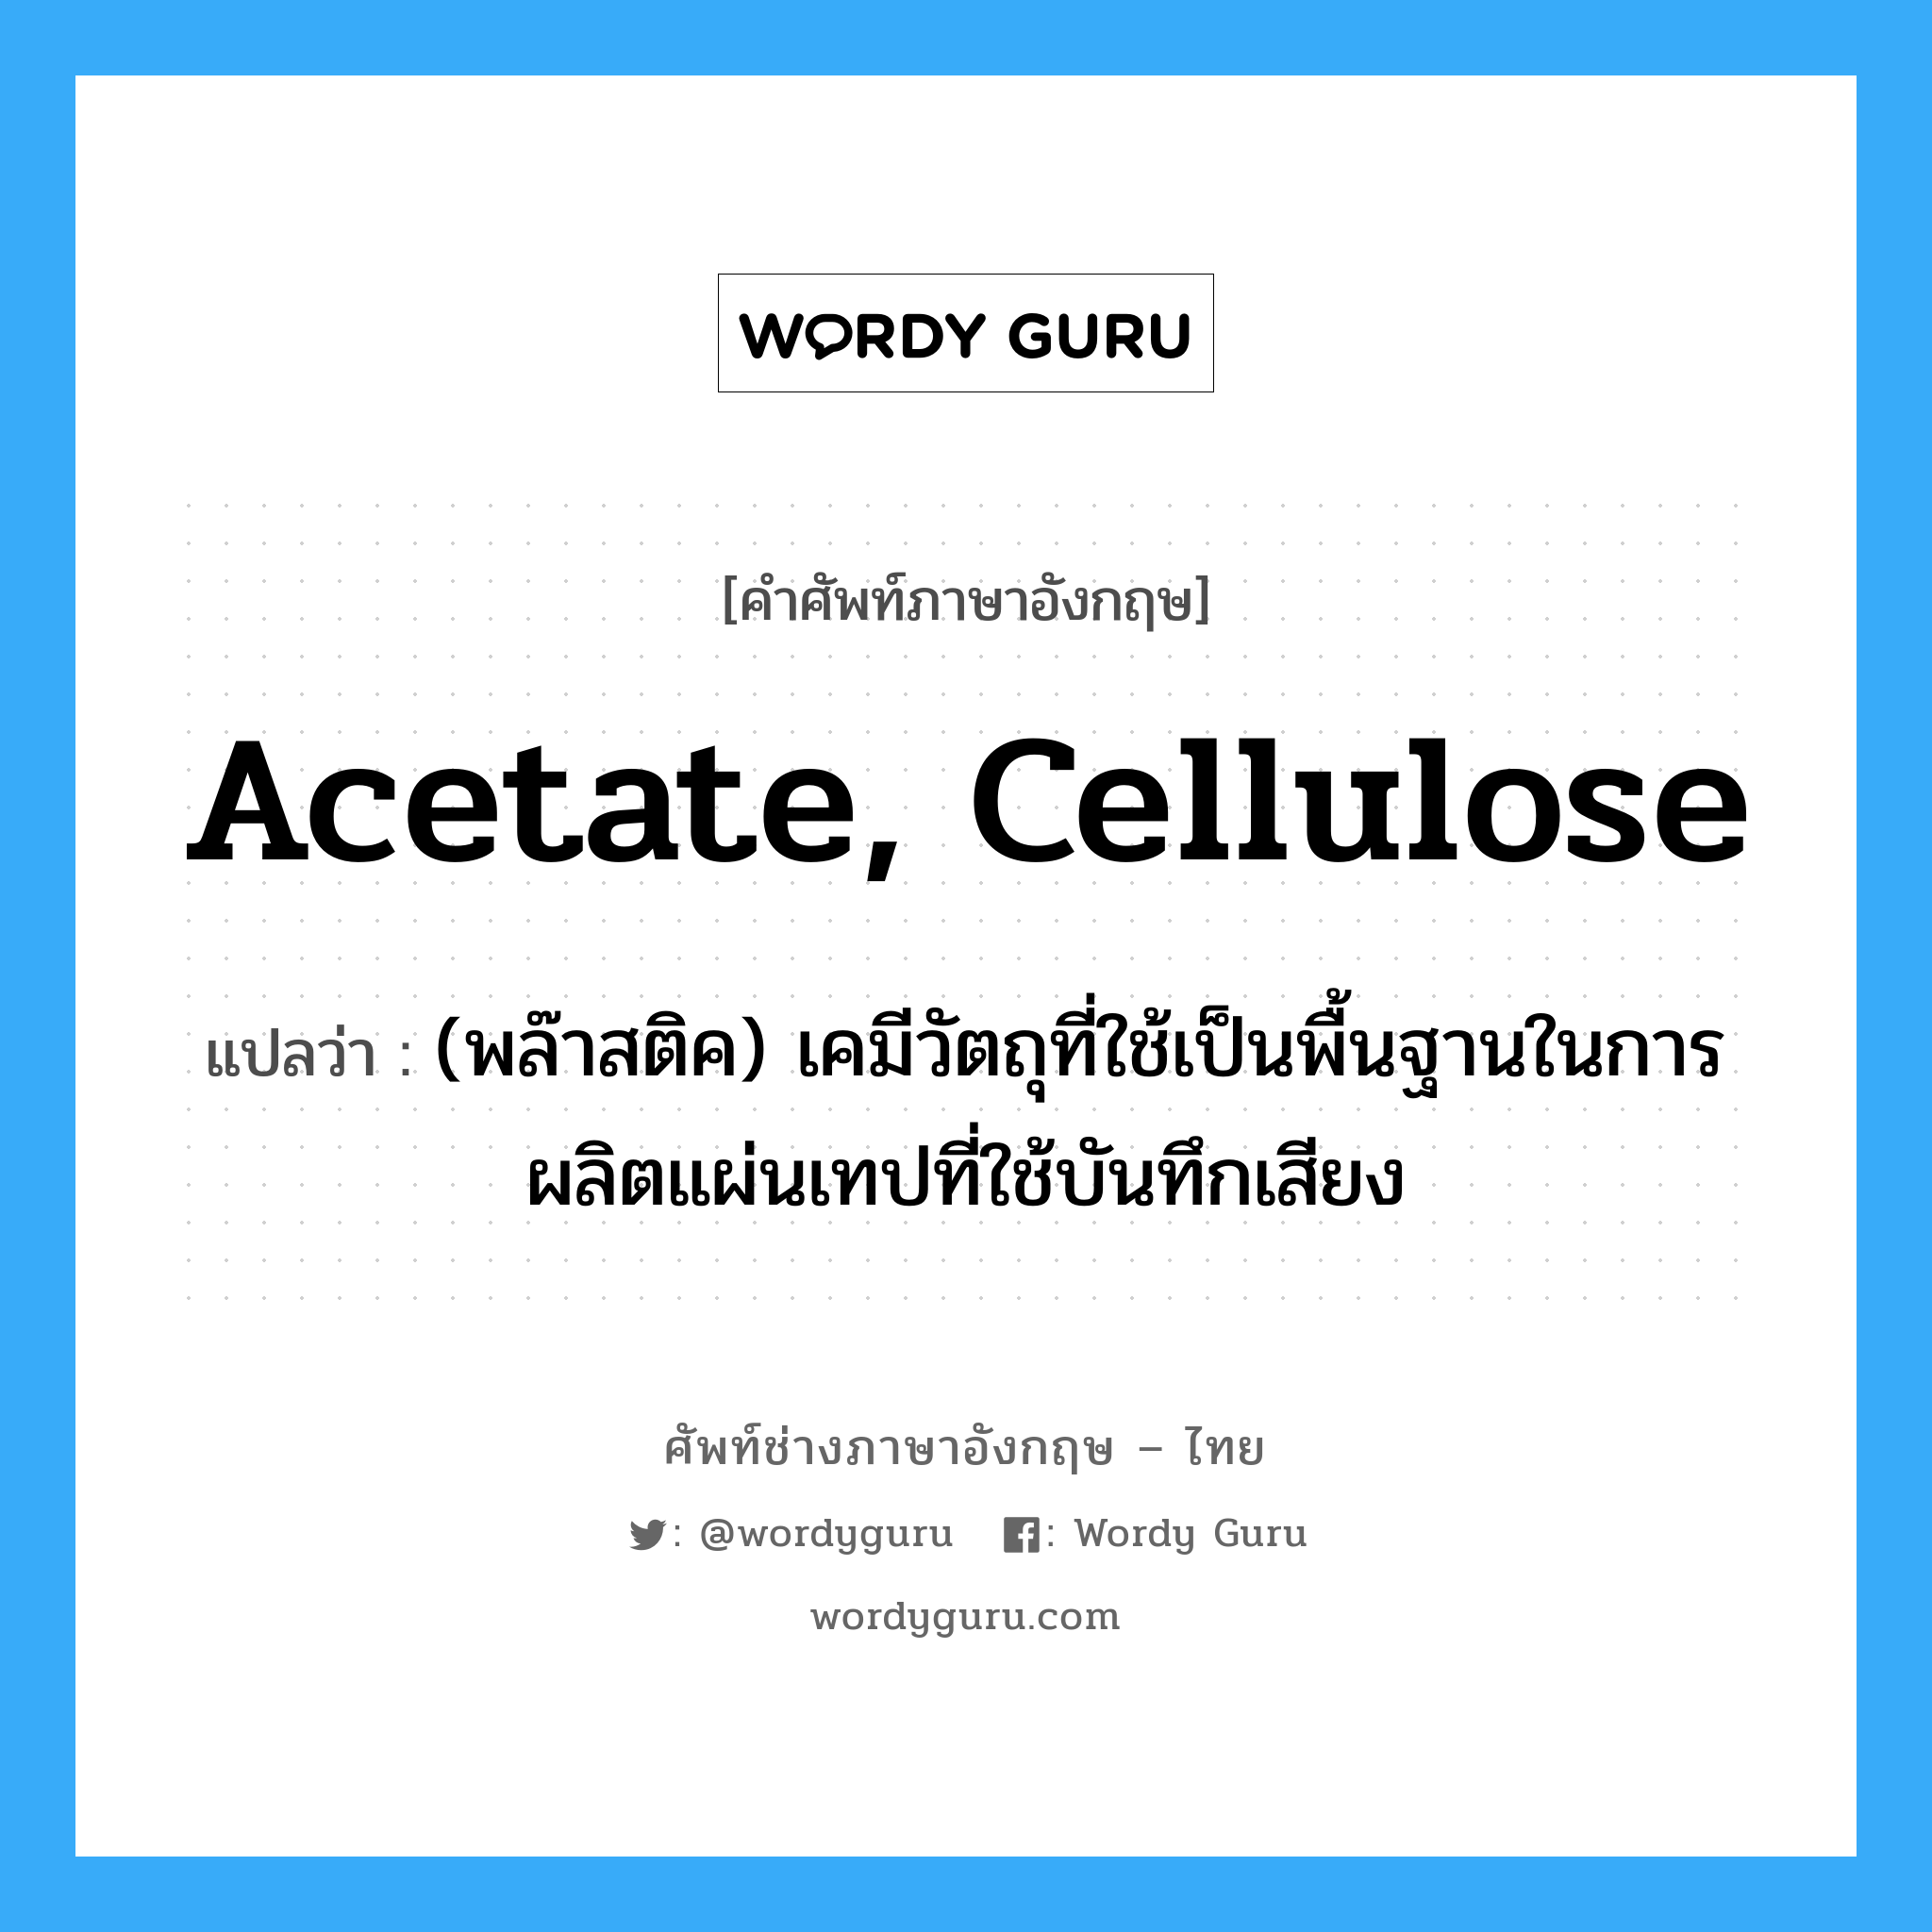 acetate, cellulose แปลว่า?, คำศัพท์ช่างภาษาอังกฤษ - ไทย acetate, cellulose คำศัพท์ภาษาอังกฤษ acetate, cellulose แปลว่า (พล๊าสติค) เคมีวัตถุที่ใช้เป็นพื้นฐานในการผลิตแผ่นเทปที่ใช้บันทึกเสียง